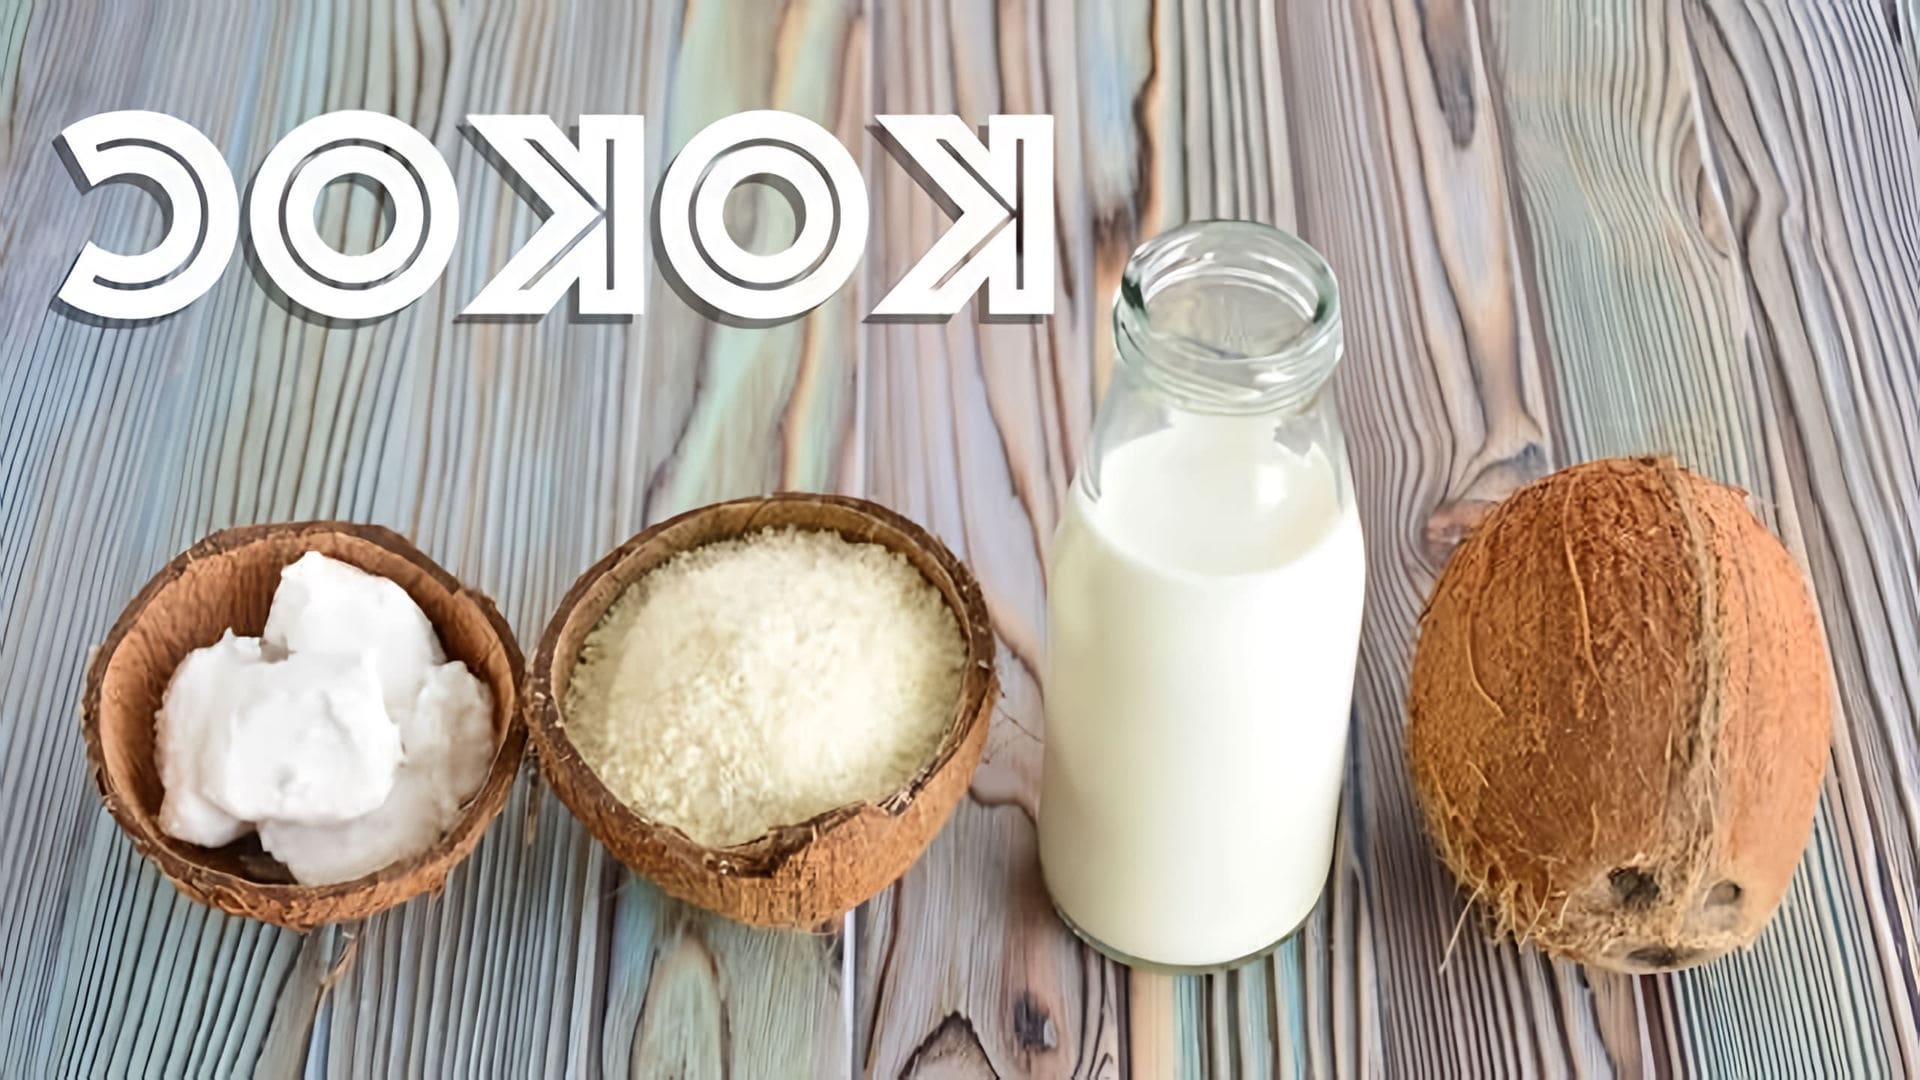 В этом видео показано, как сделать кокосовое масло, молоко и стружку в домашних условиях